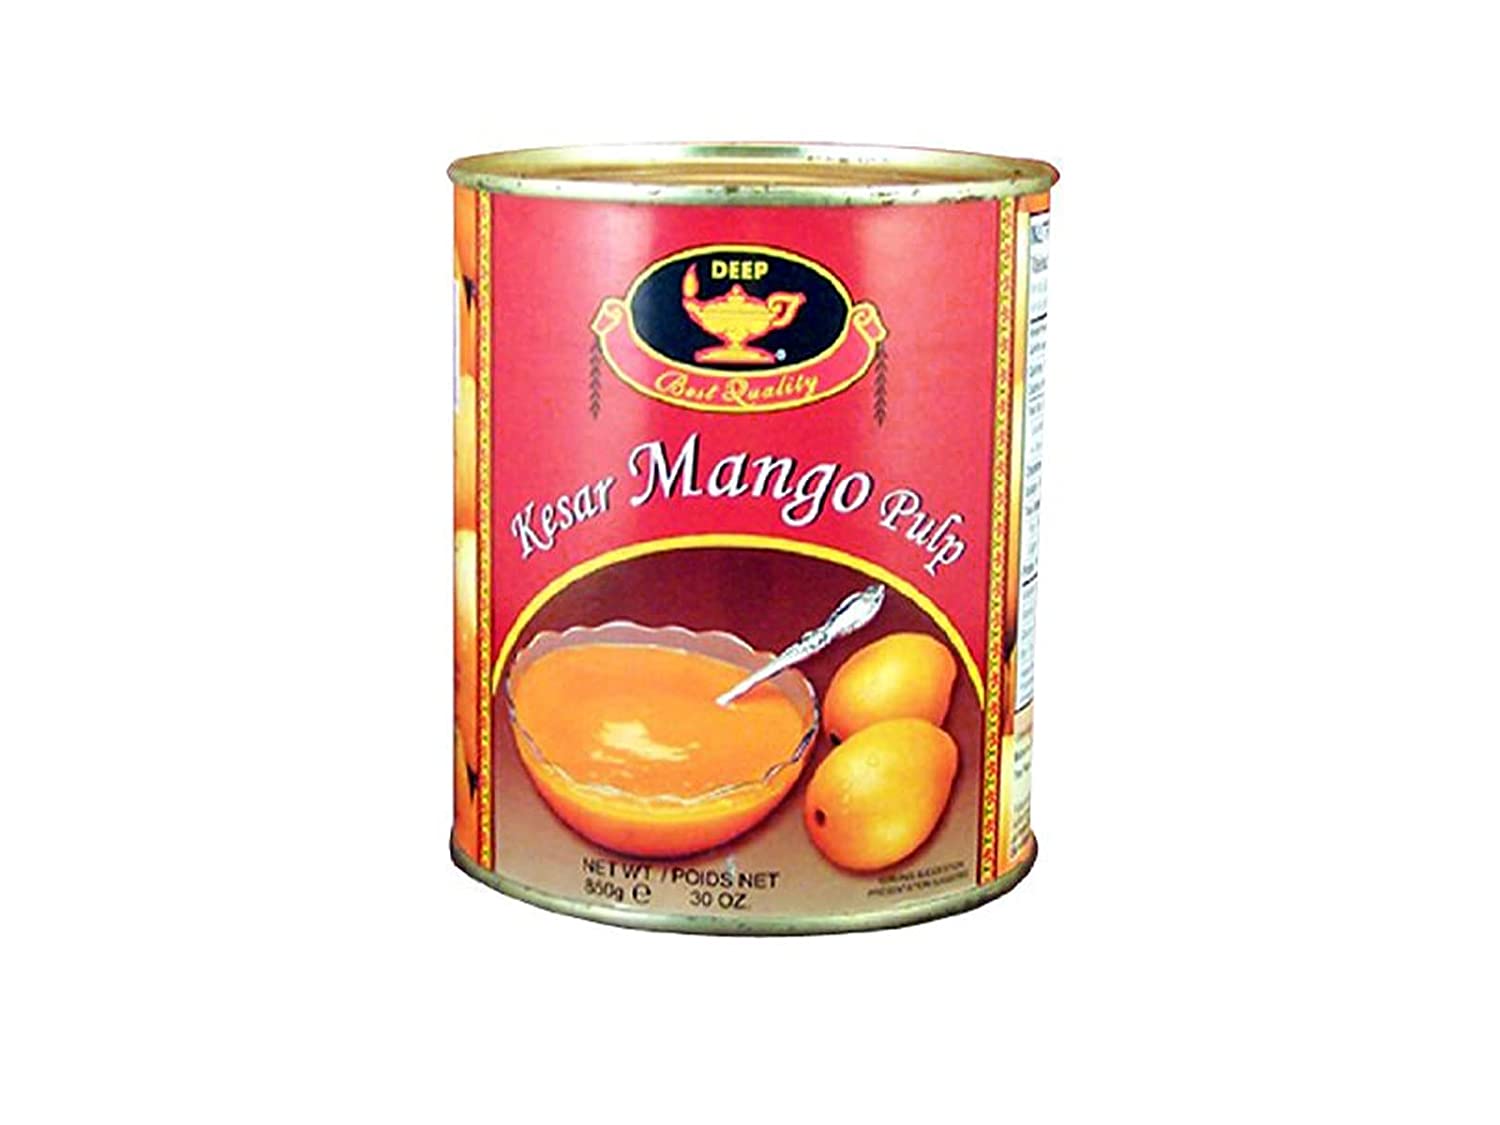 Deep Kesar Mango Pulp 30 oz